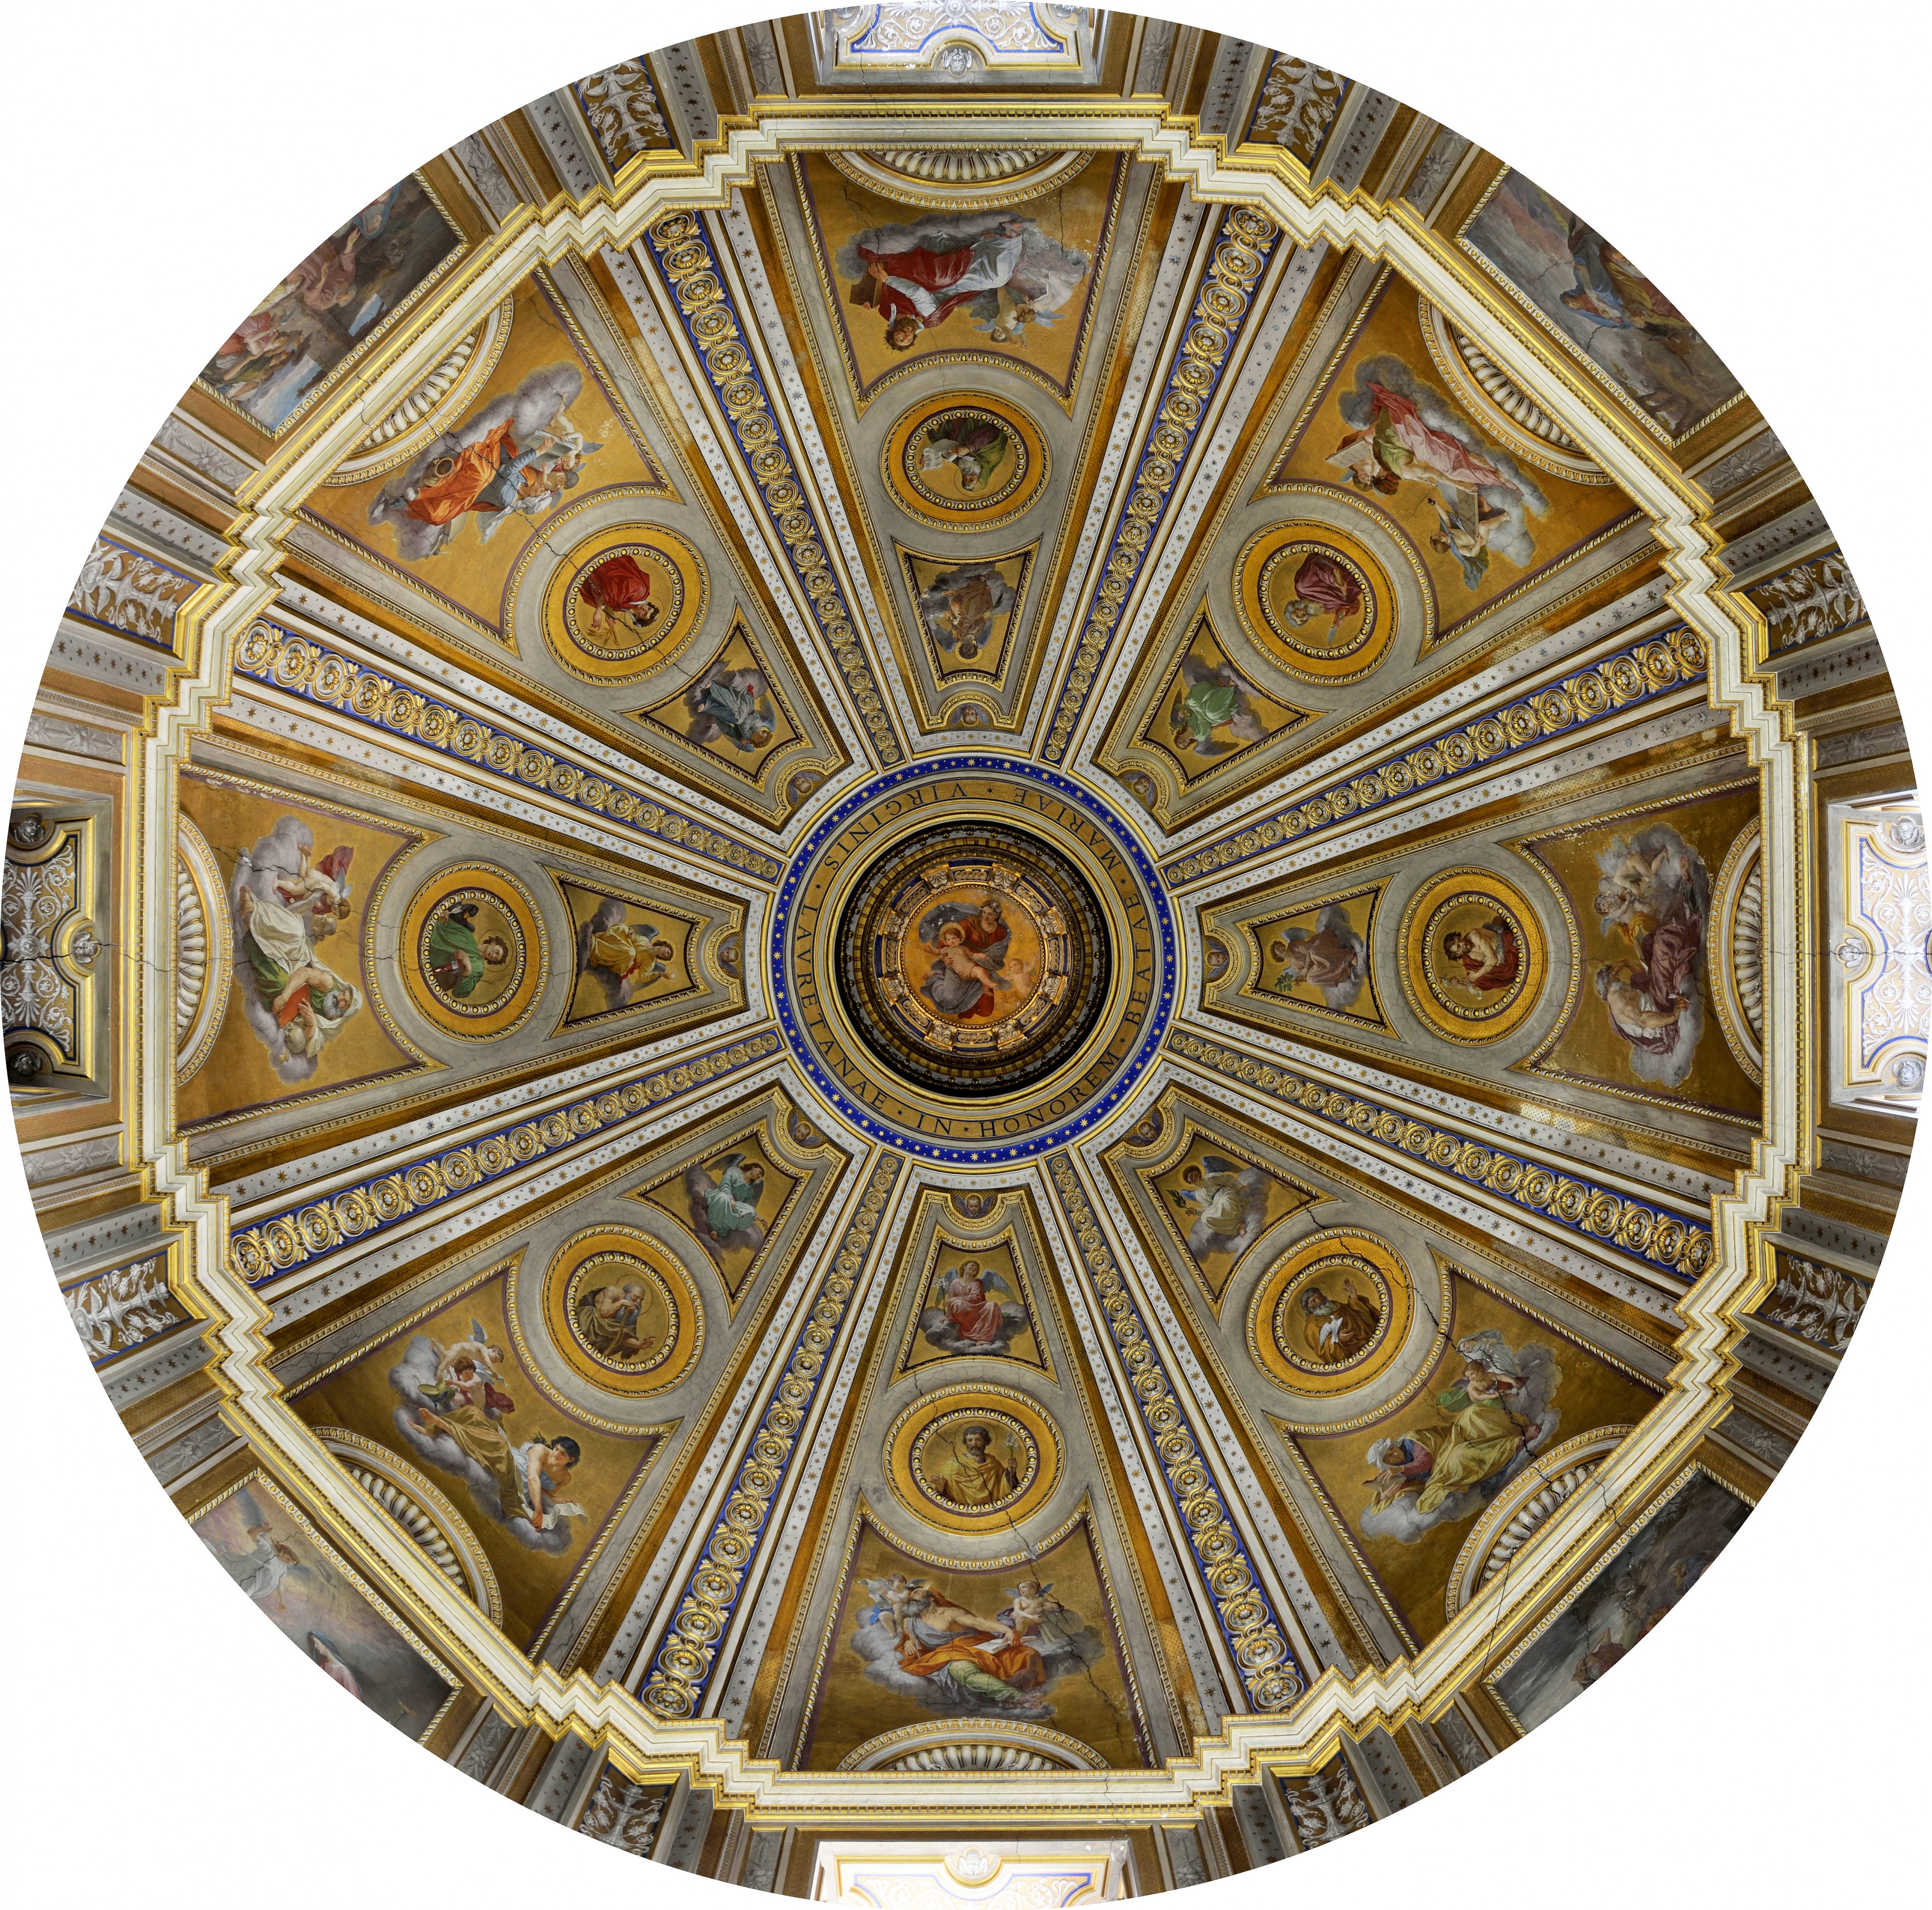 Dome of Santa Maria di Loreto (Rome)